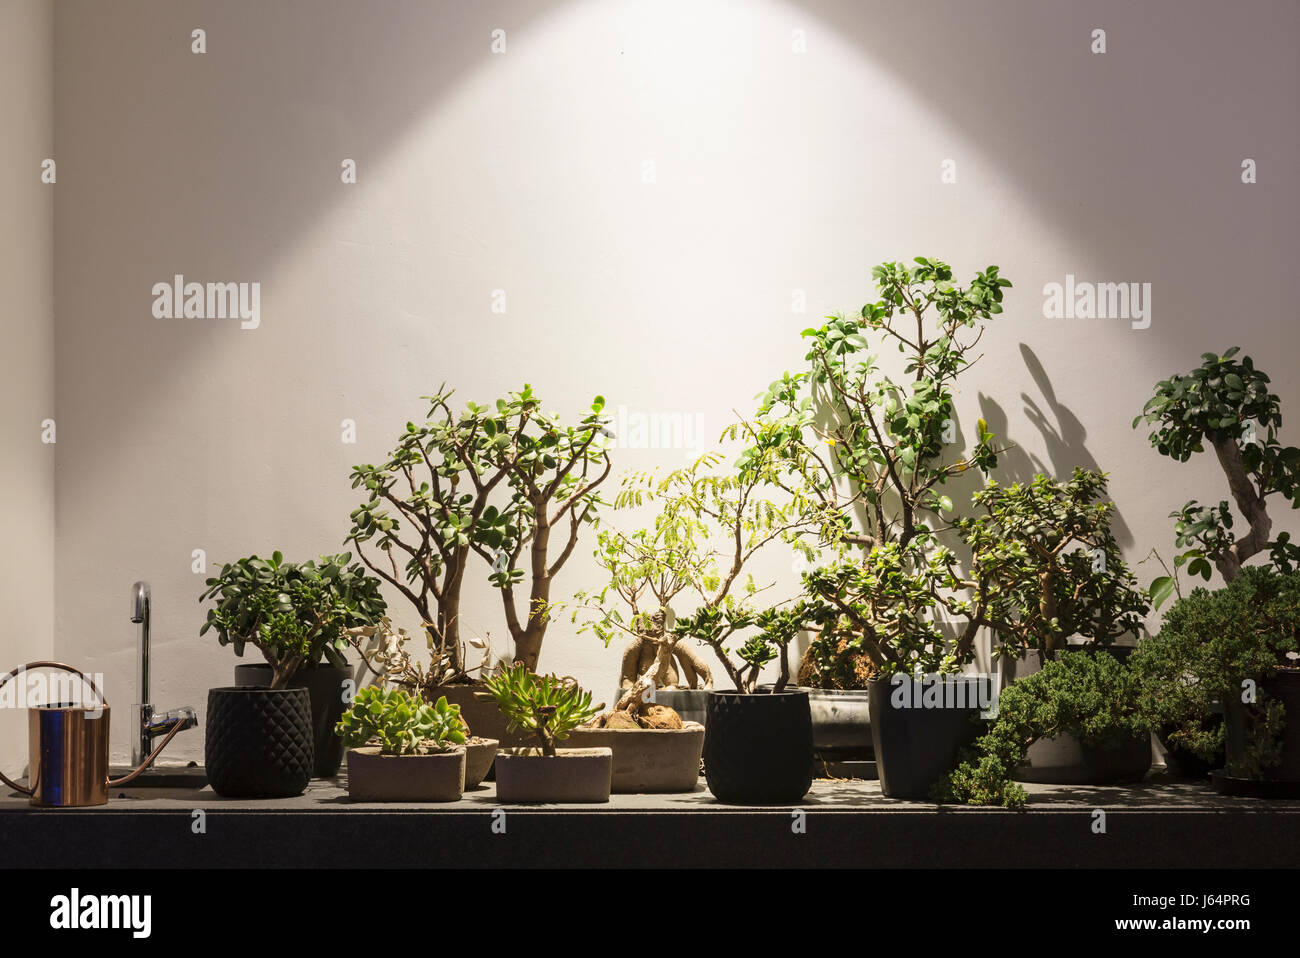 Plantes tropicales et arbres Bonsais sous illumination de la lumière Banque D'Images